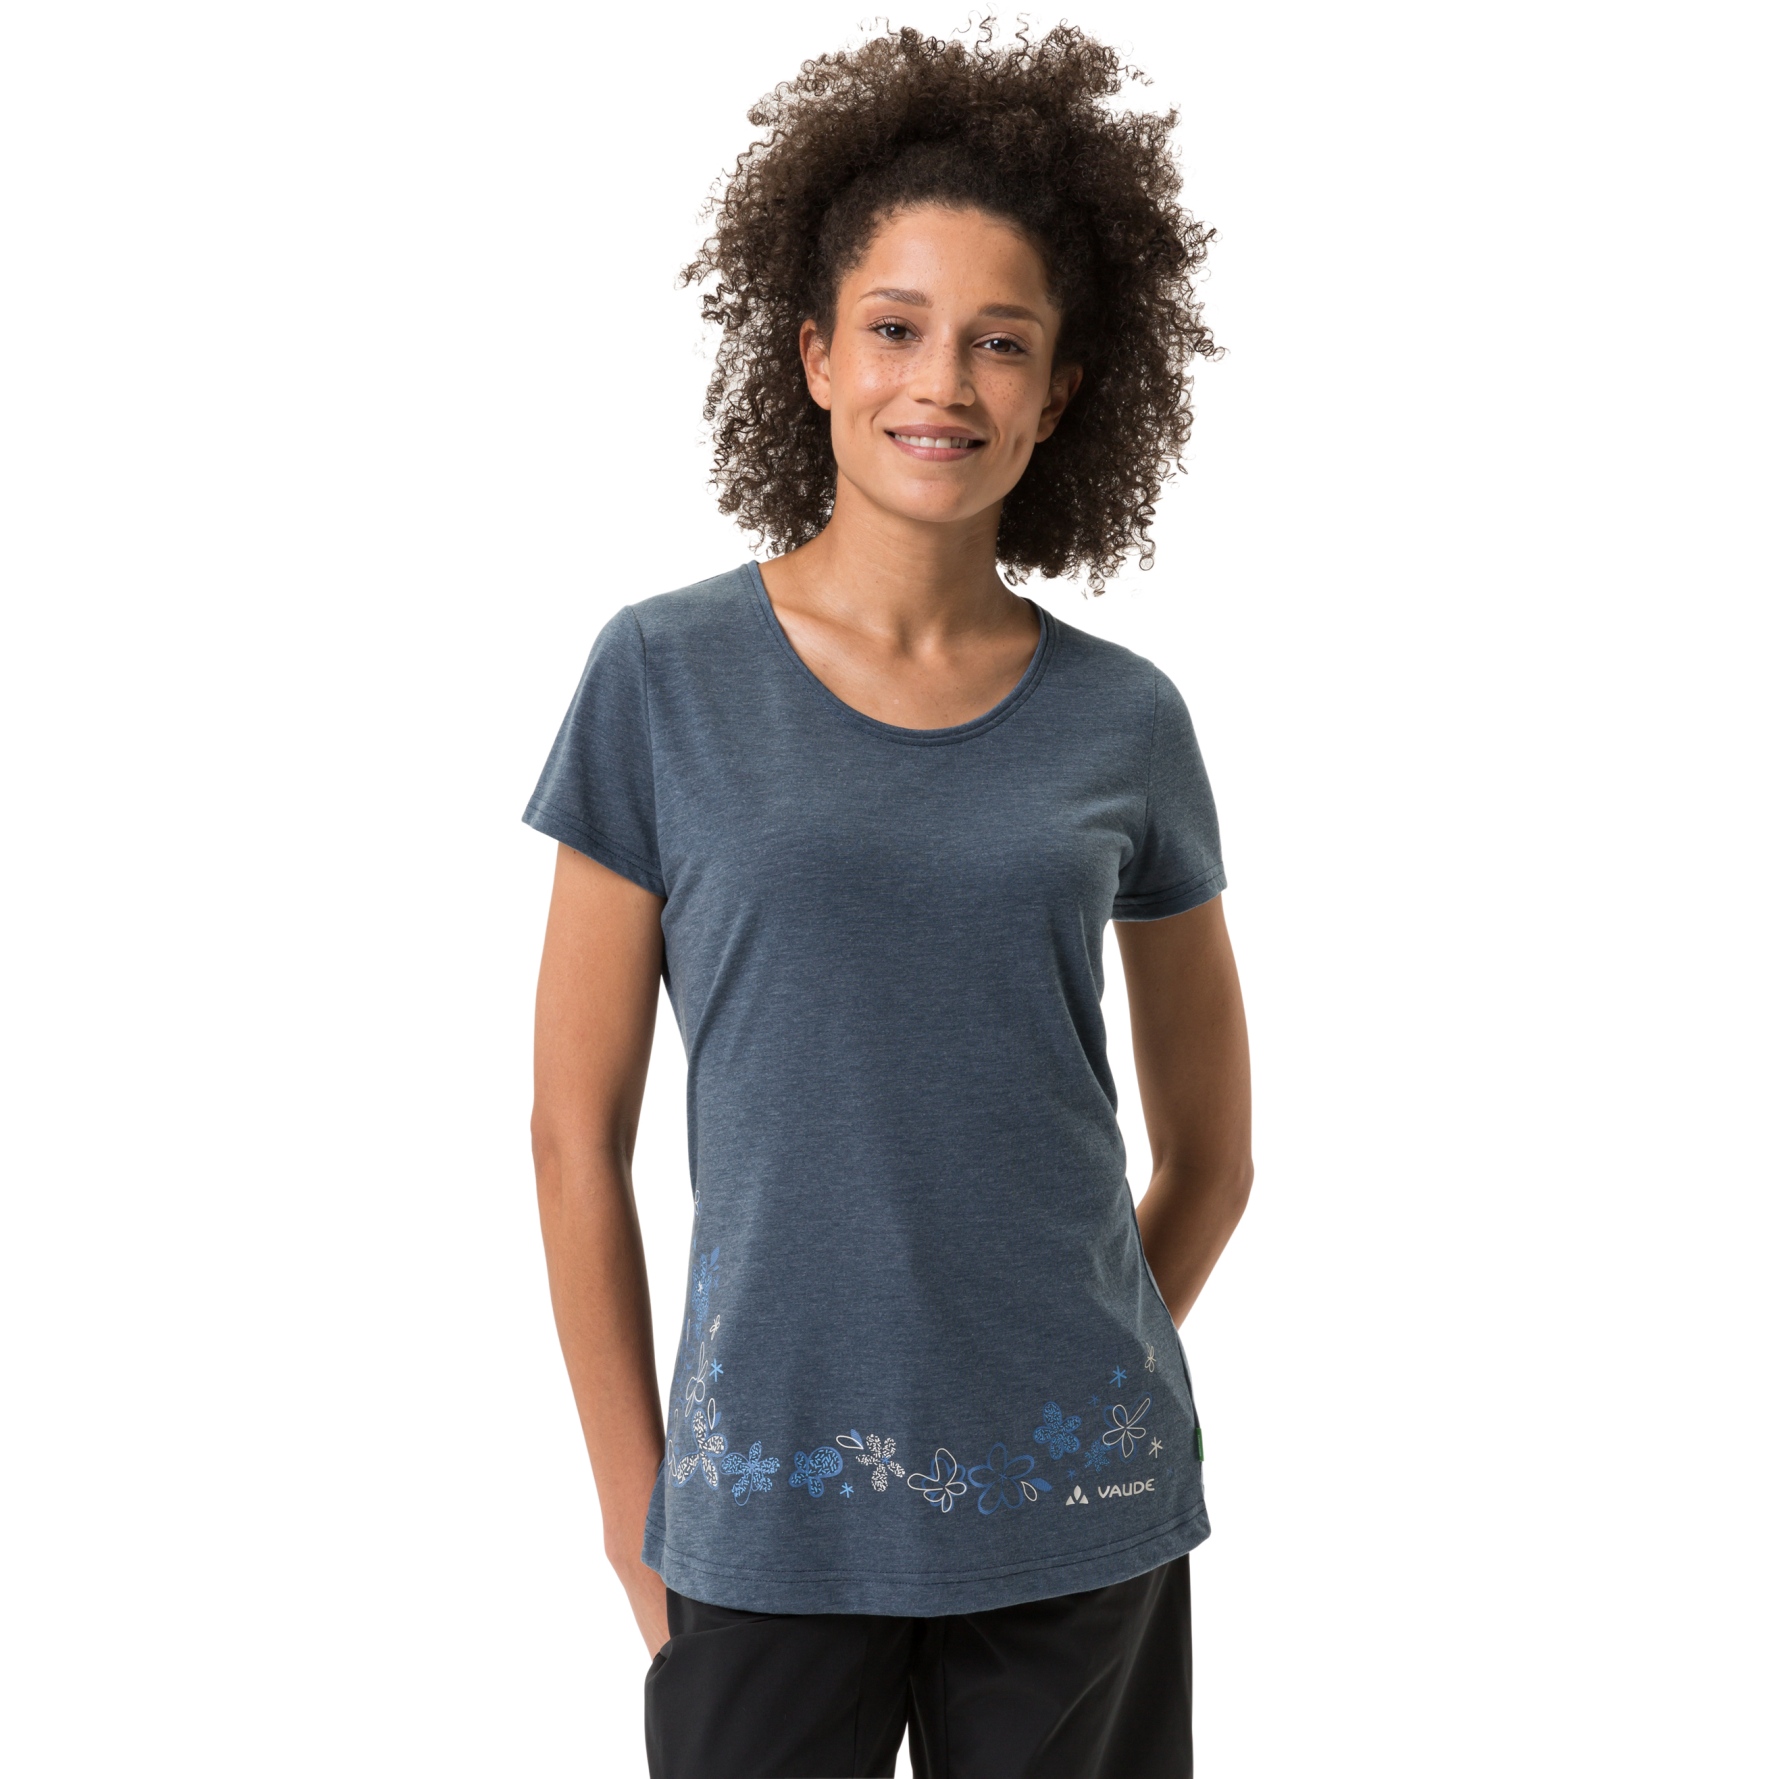 Produktbild von Vaude Skomer Print Damen T-Shirt II - dark sea/dark sea